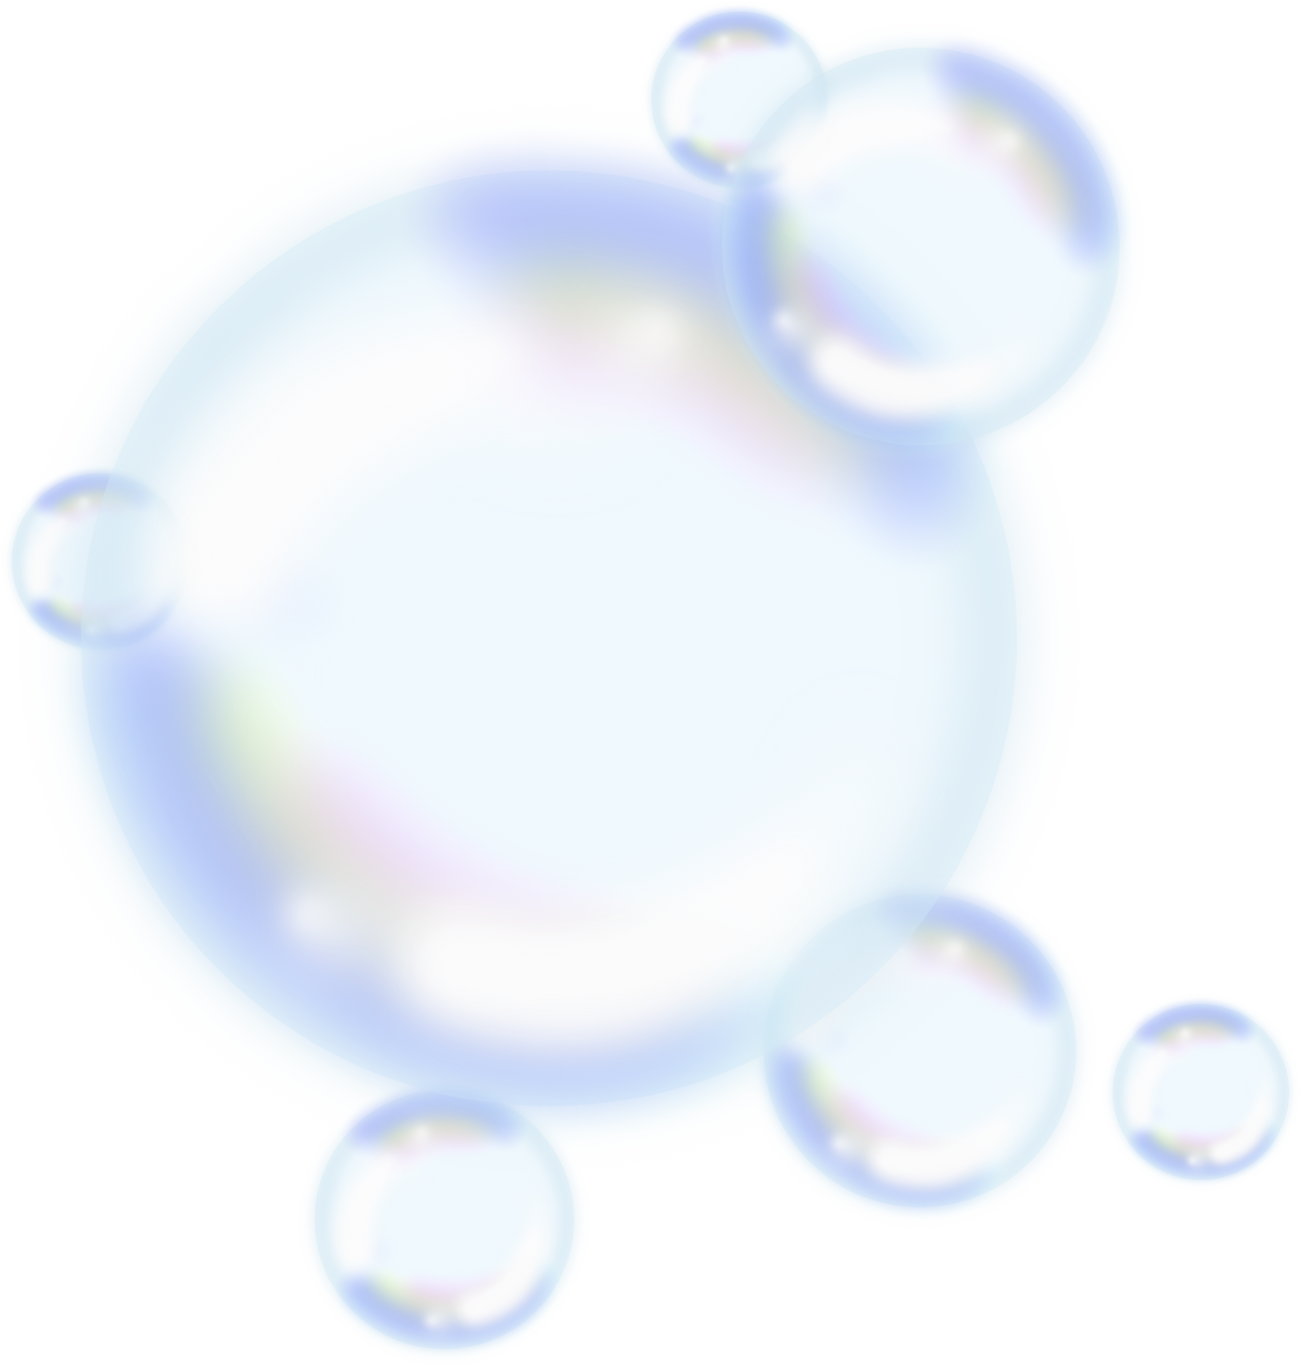 Bubble soap illustration